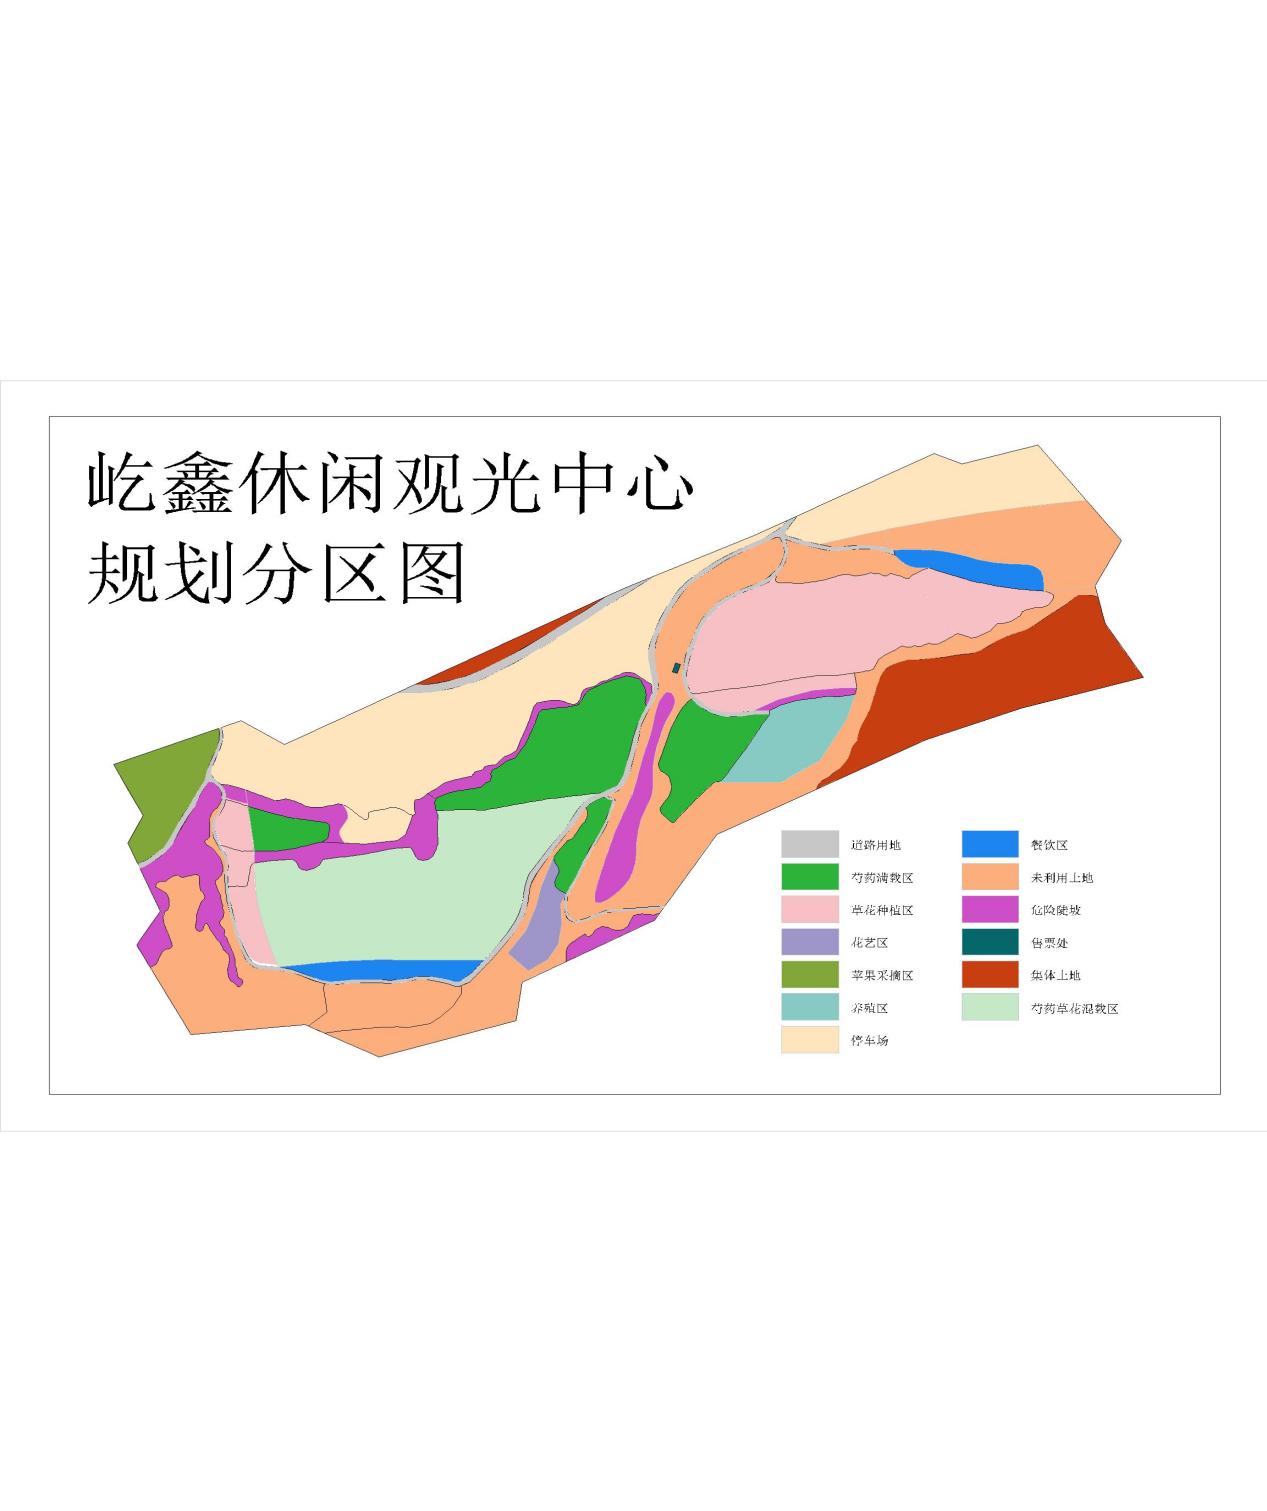 田家营子土地利用规划第3版-Model